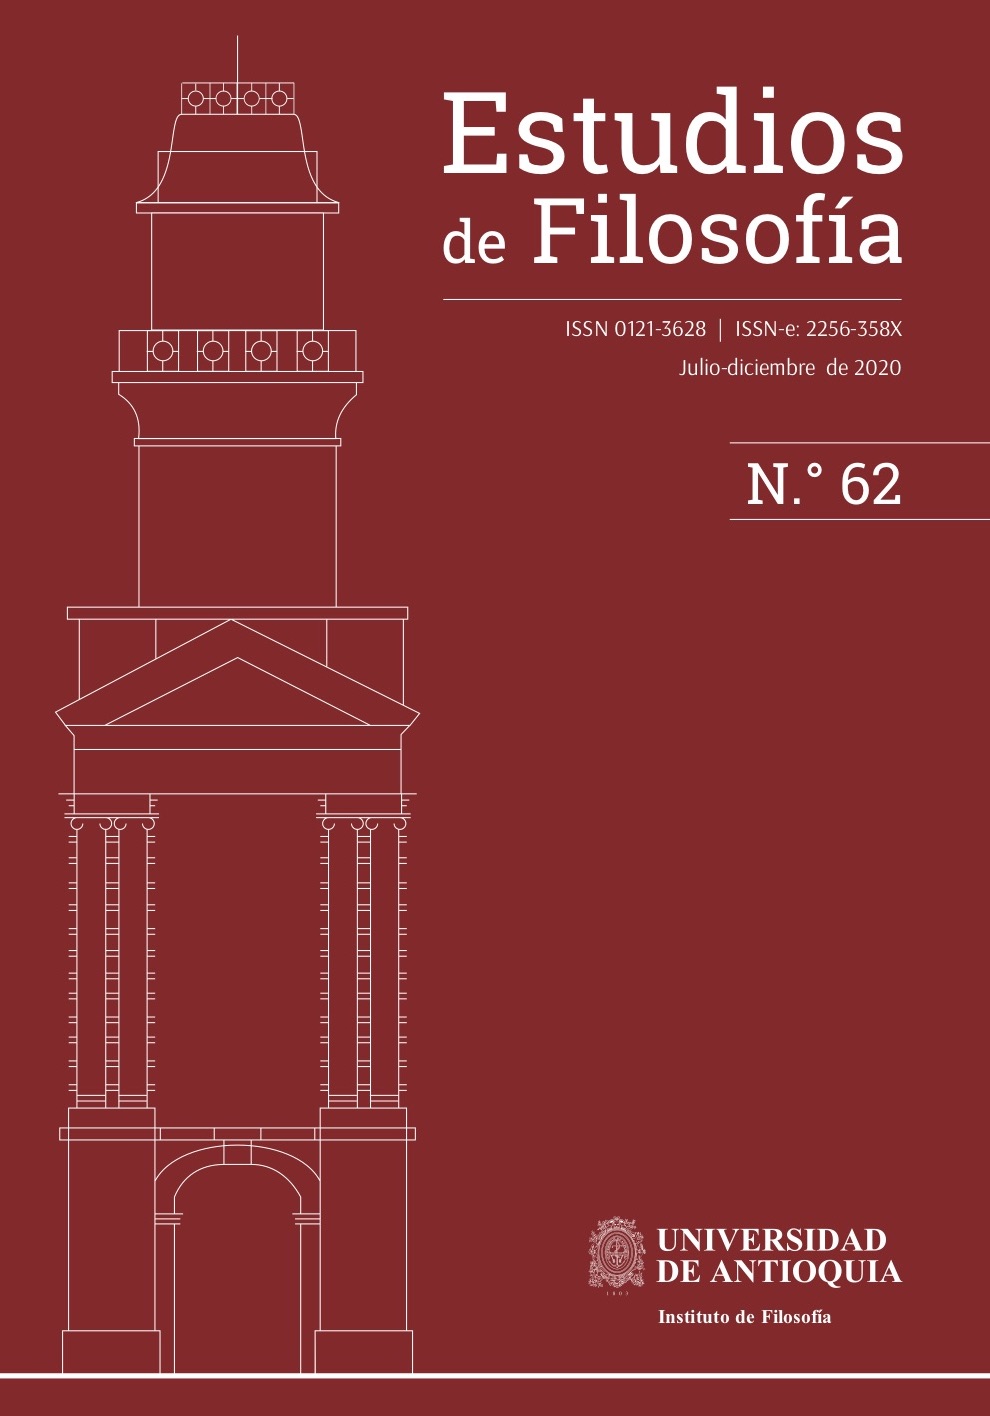 CARATULA ESTUDIOS DE FILOSOFIA 62 1